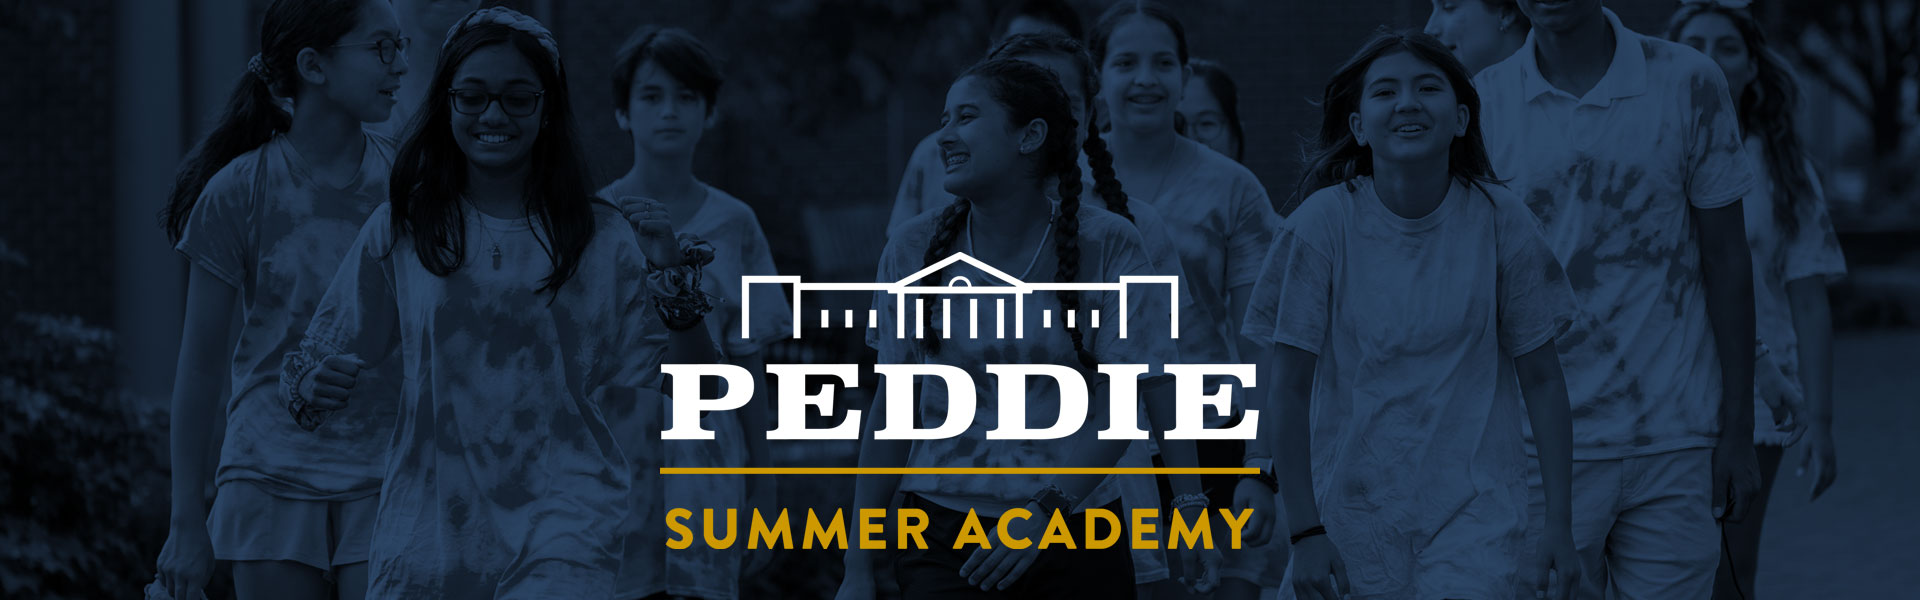 Peddie Summer Academy banner